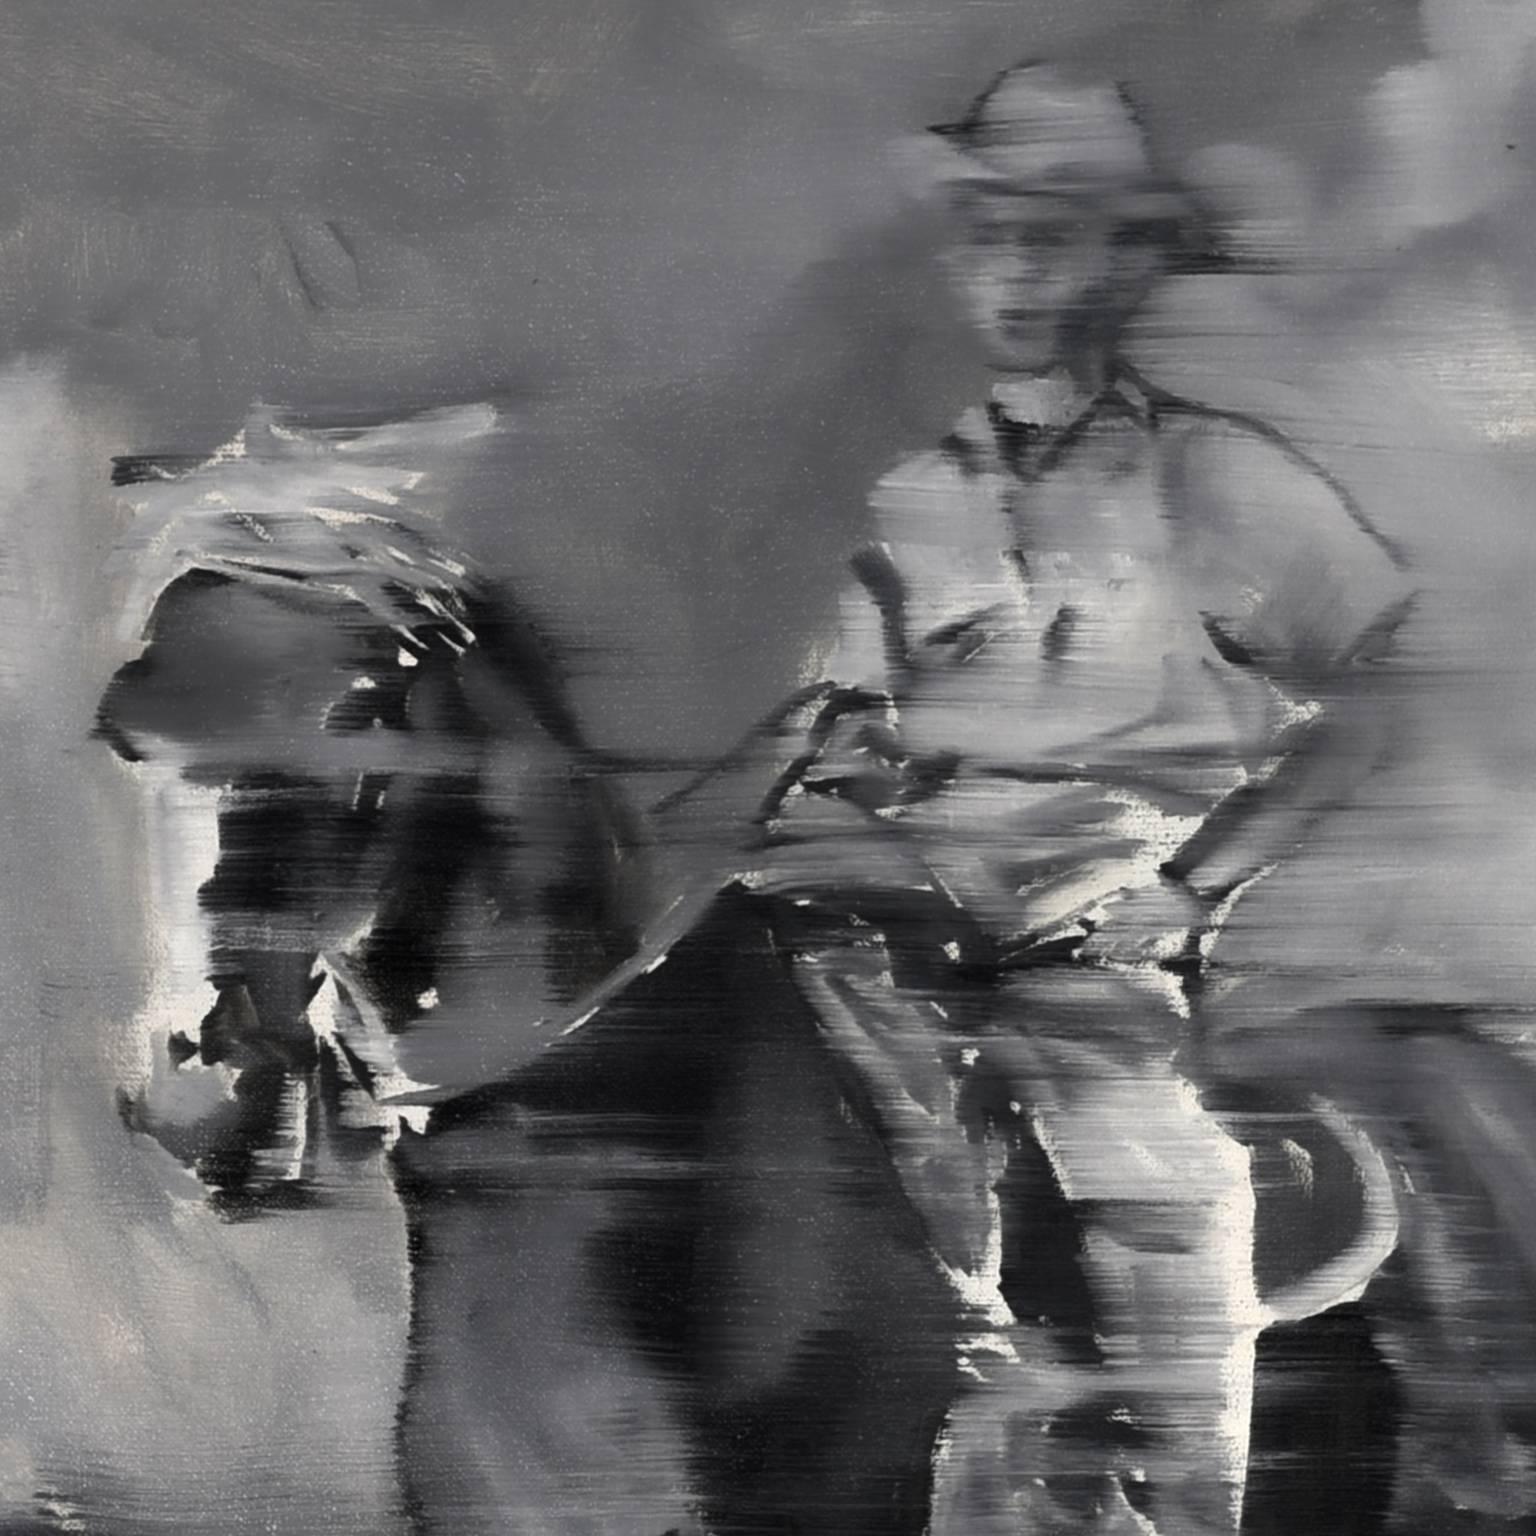 Drive-by Memories: Cowboy - Painting by Haylee Ryan